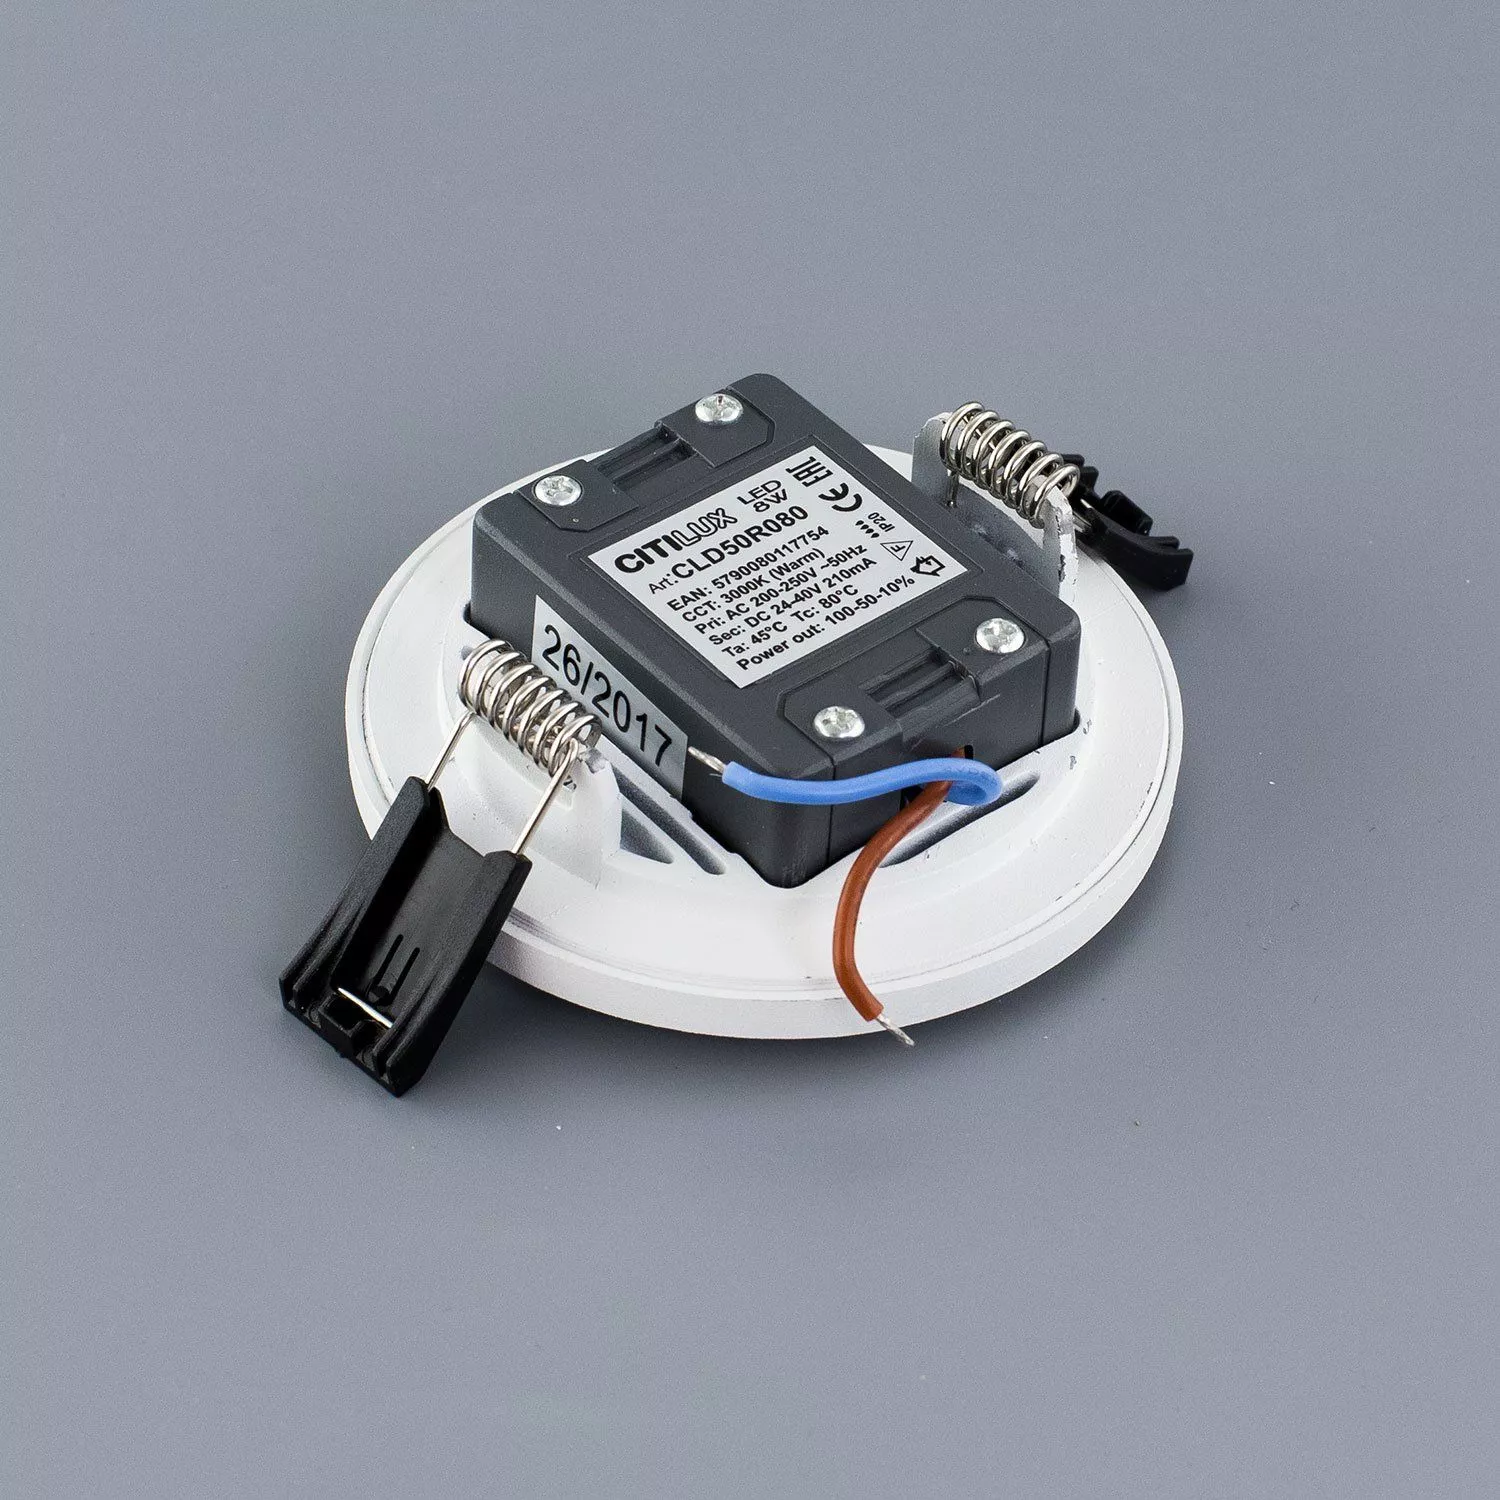 Встраиваемый светильник Омега D 90 белый (теплый свет) Citilux CLD50R080